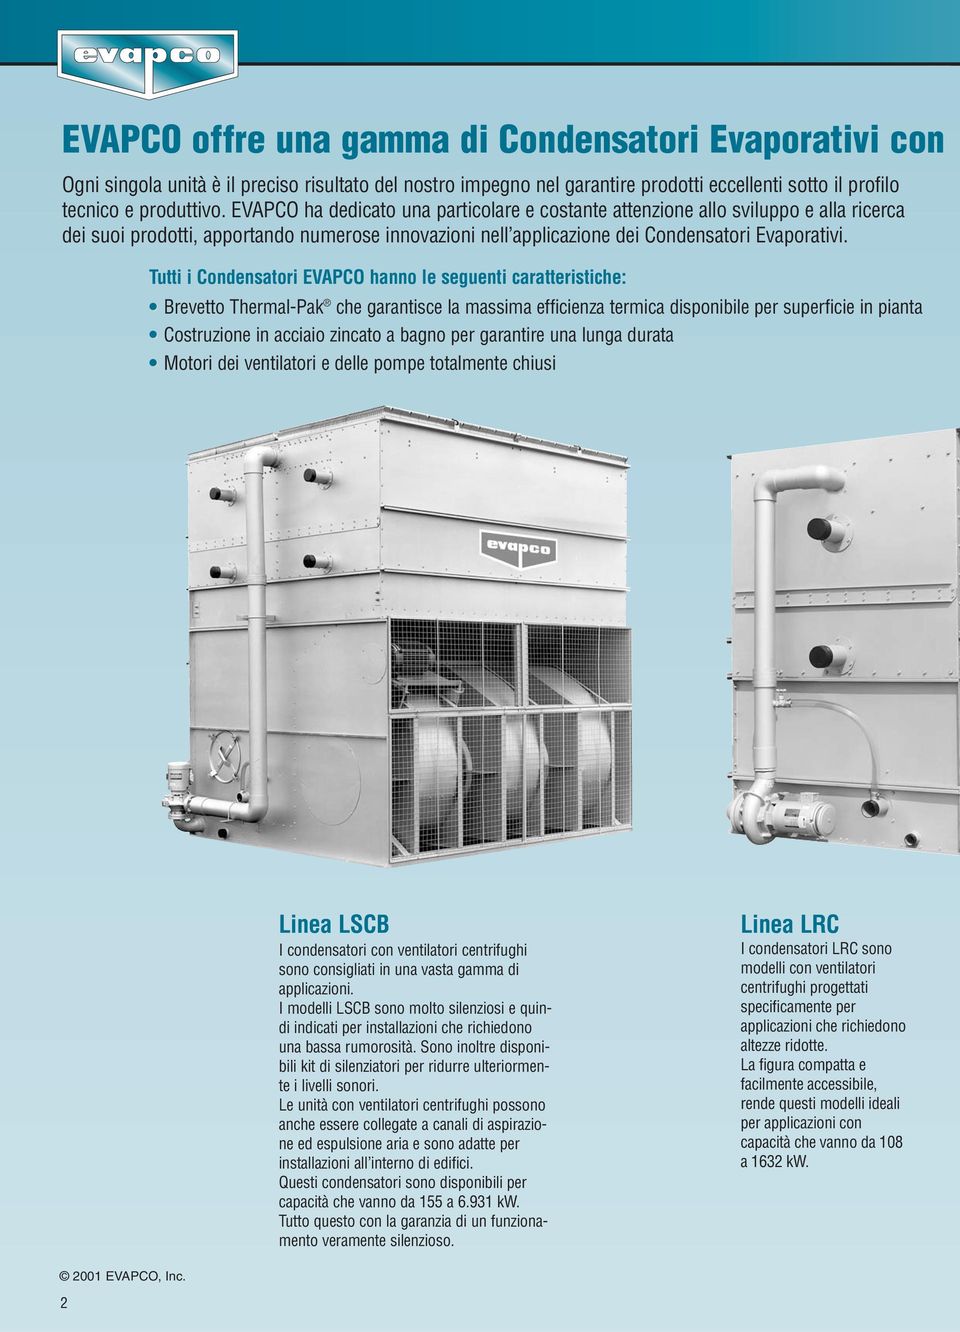 Tutti i Condensatori EVAPCO hanno le seguenti caratteristiche: Brevetto Thermal-Pak che garantisce la massima efficienza termica disponibile per superficie in pianta Costruzione in acciaio zincato a